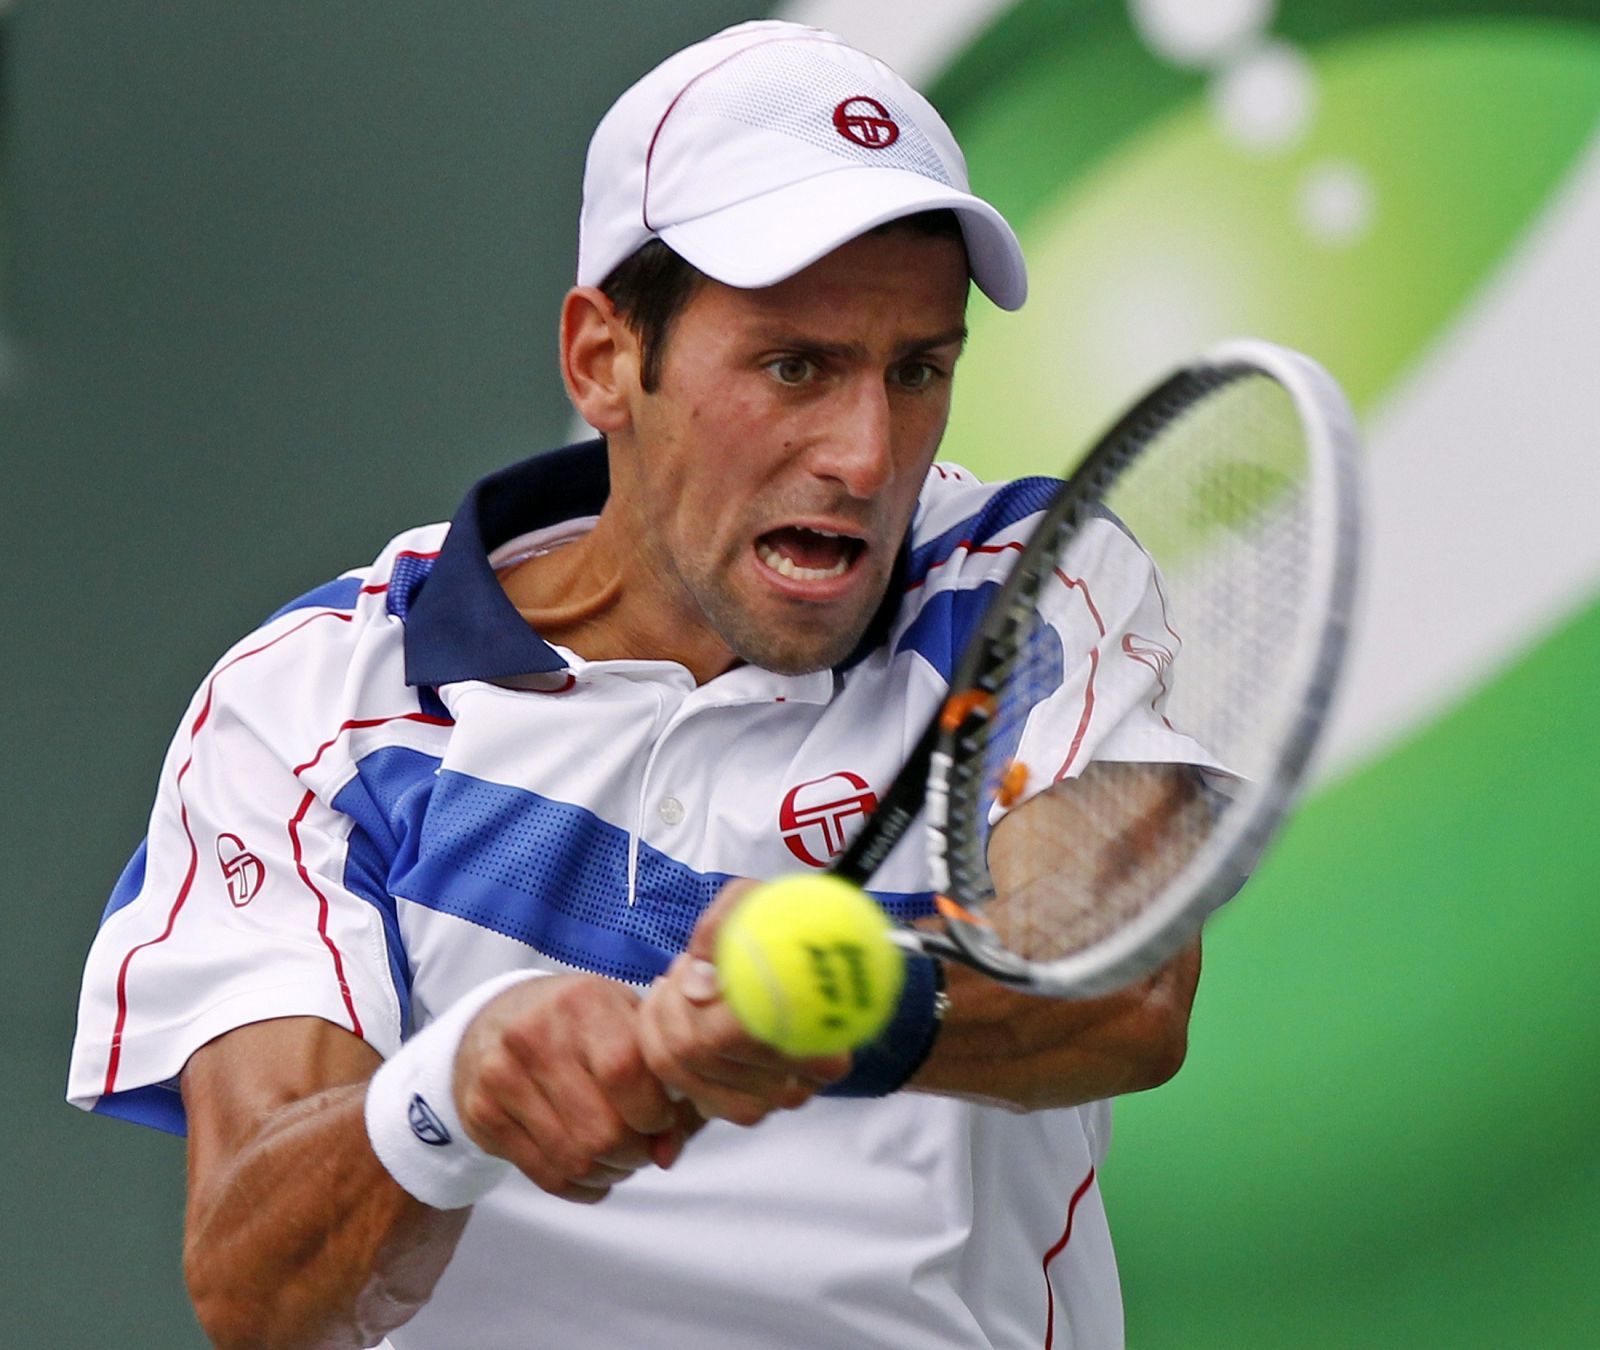 Djokovic devuelve una bola al estadounidense Mardy Fish